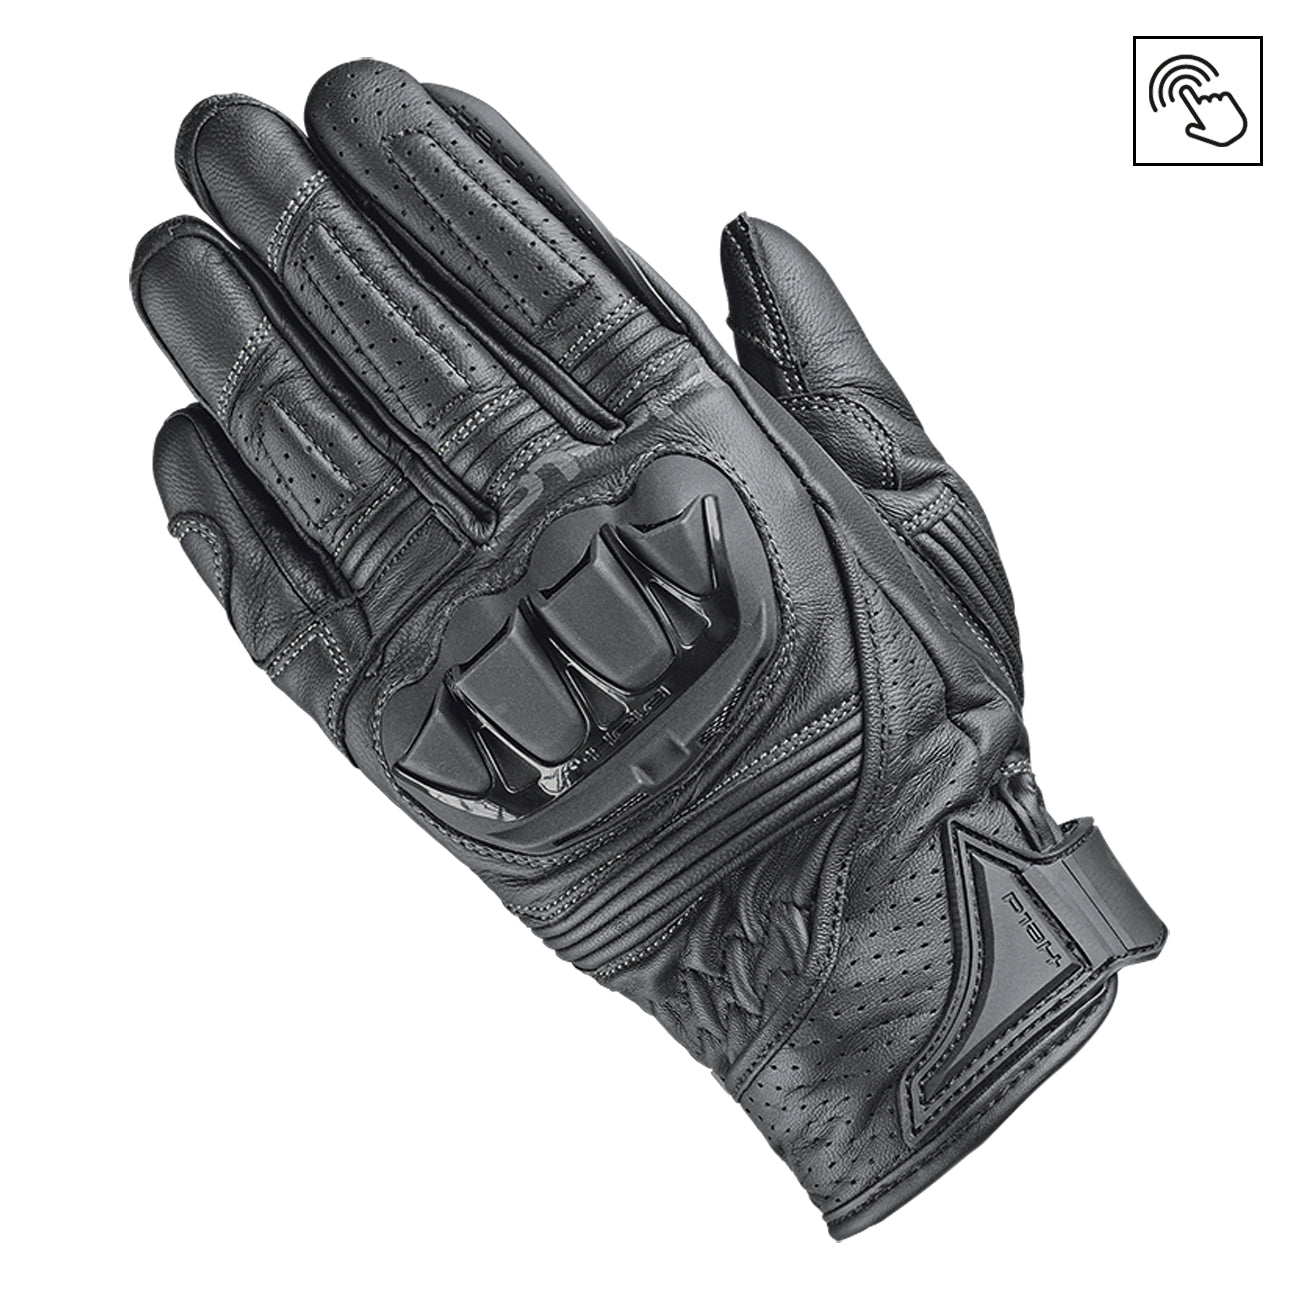 Held Spot Gloves - Black